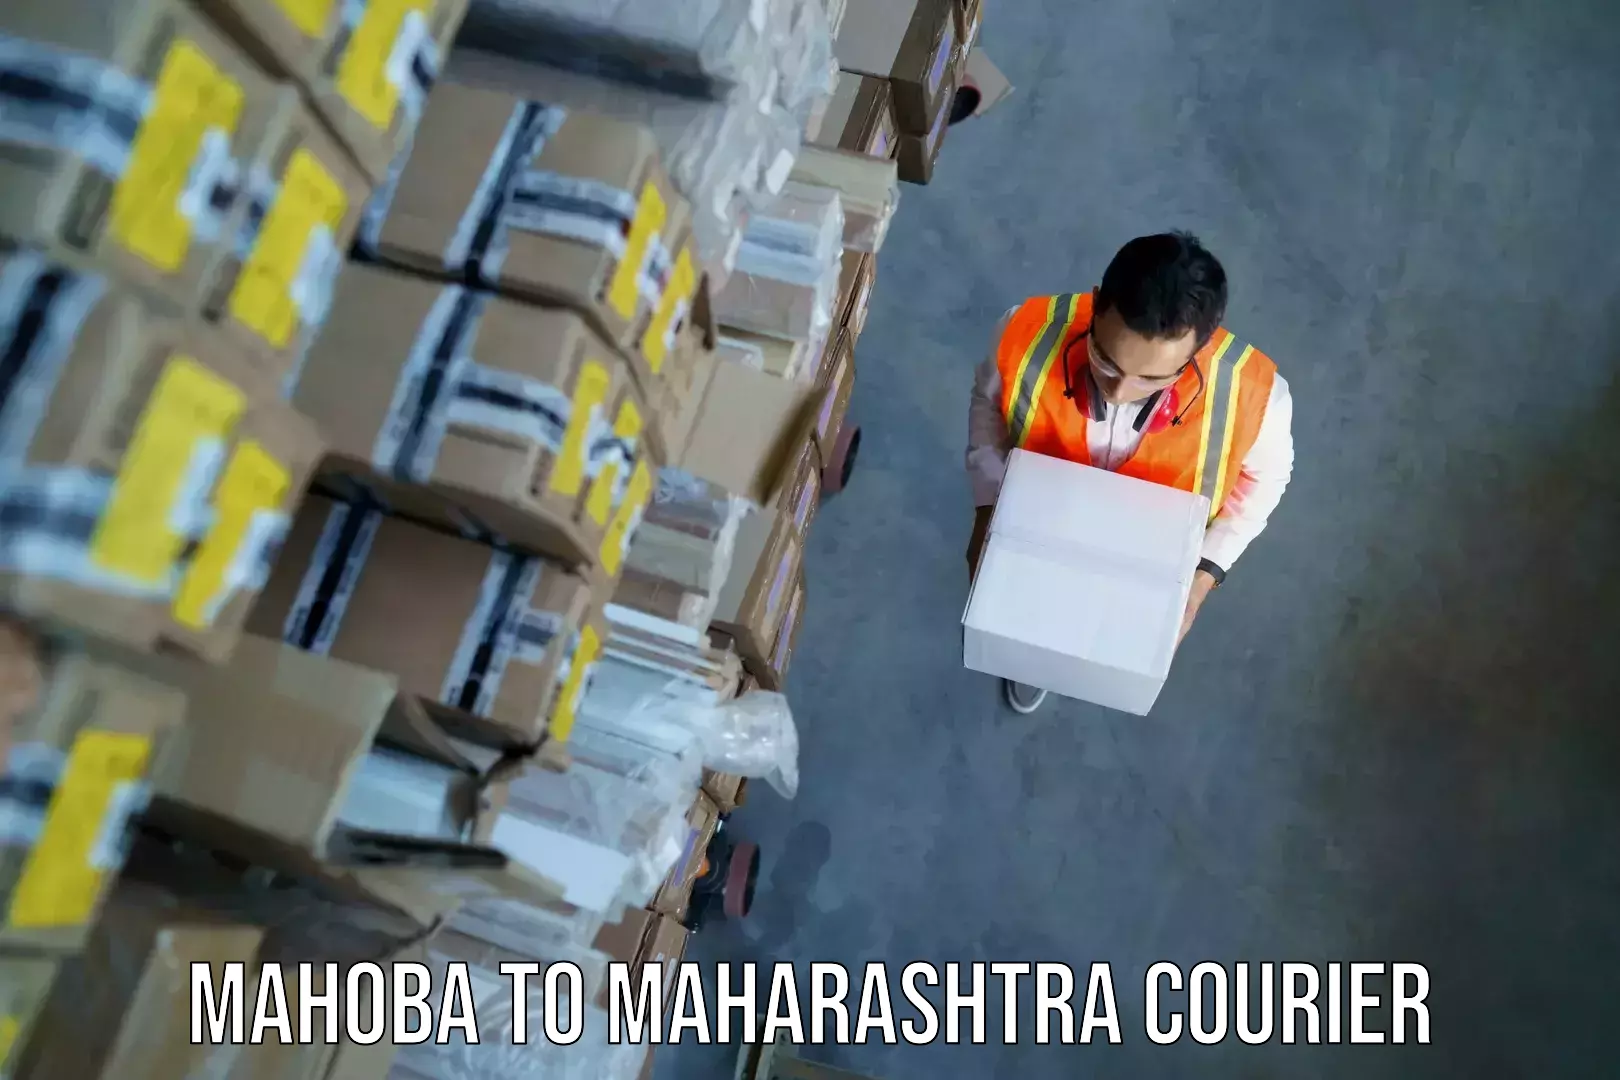 Baggage transport professionals Mahoba to Maharashtra